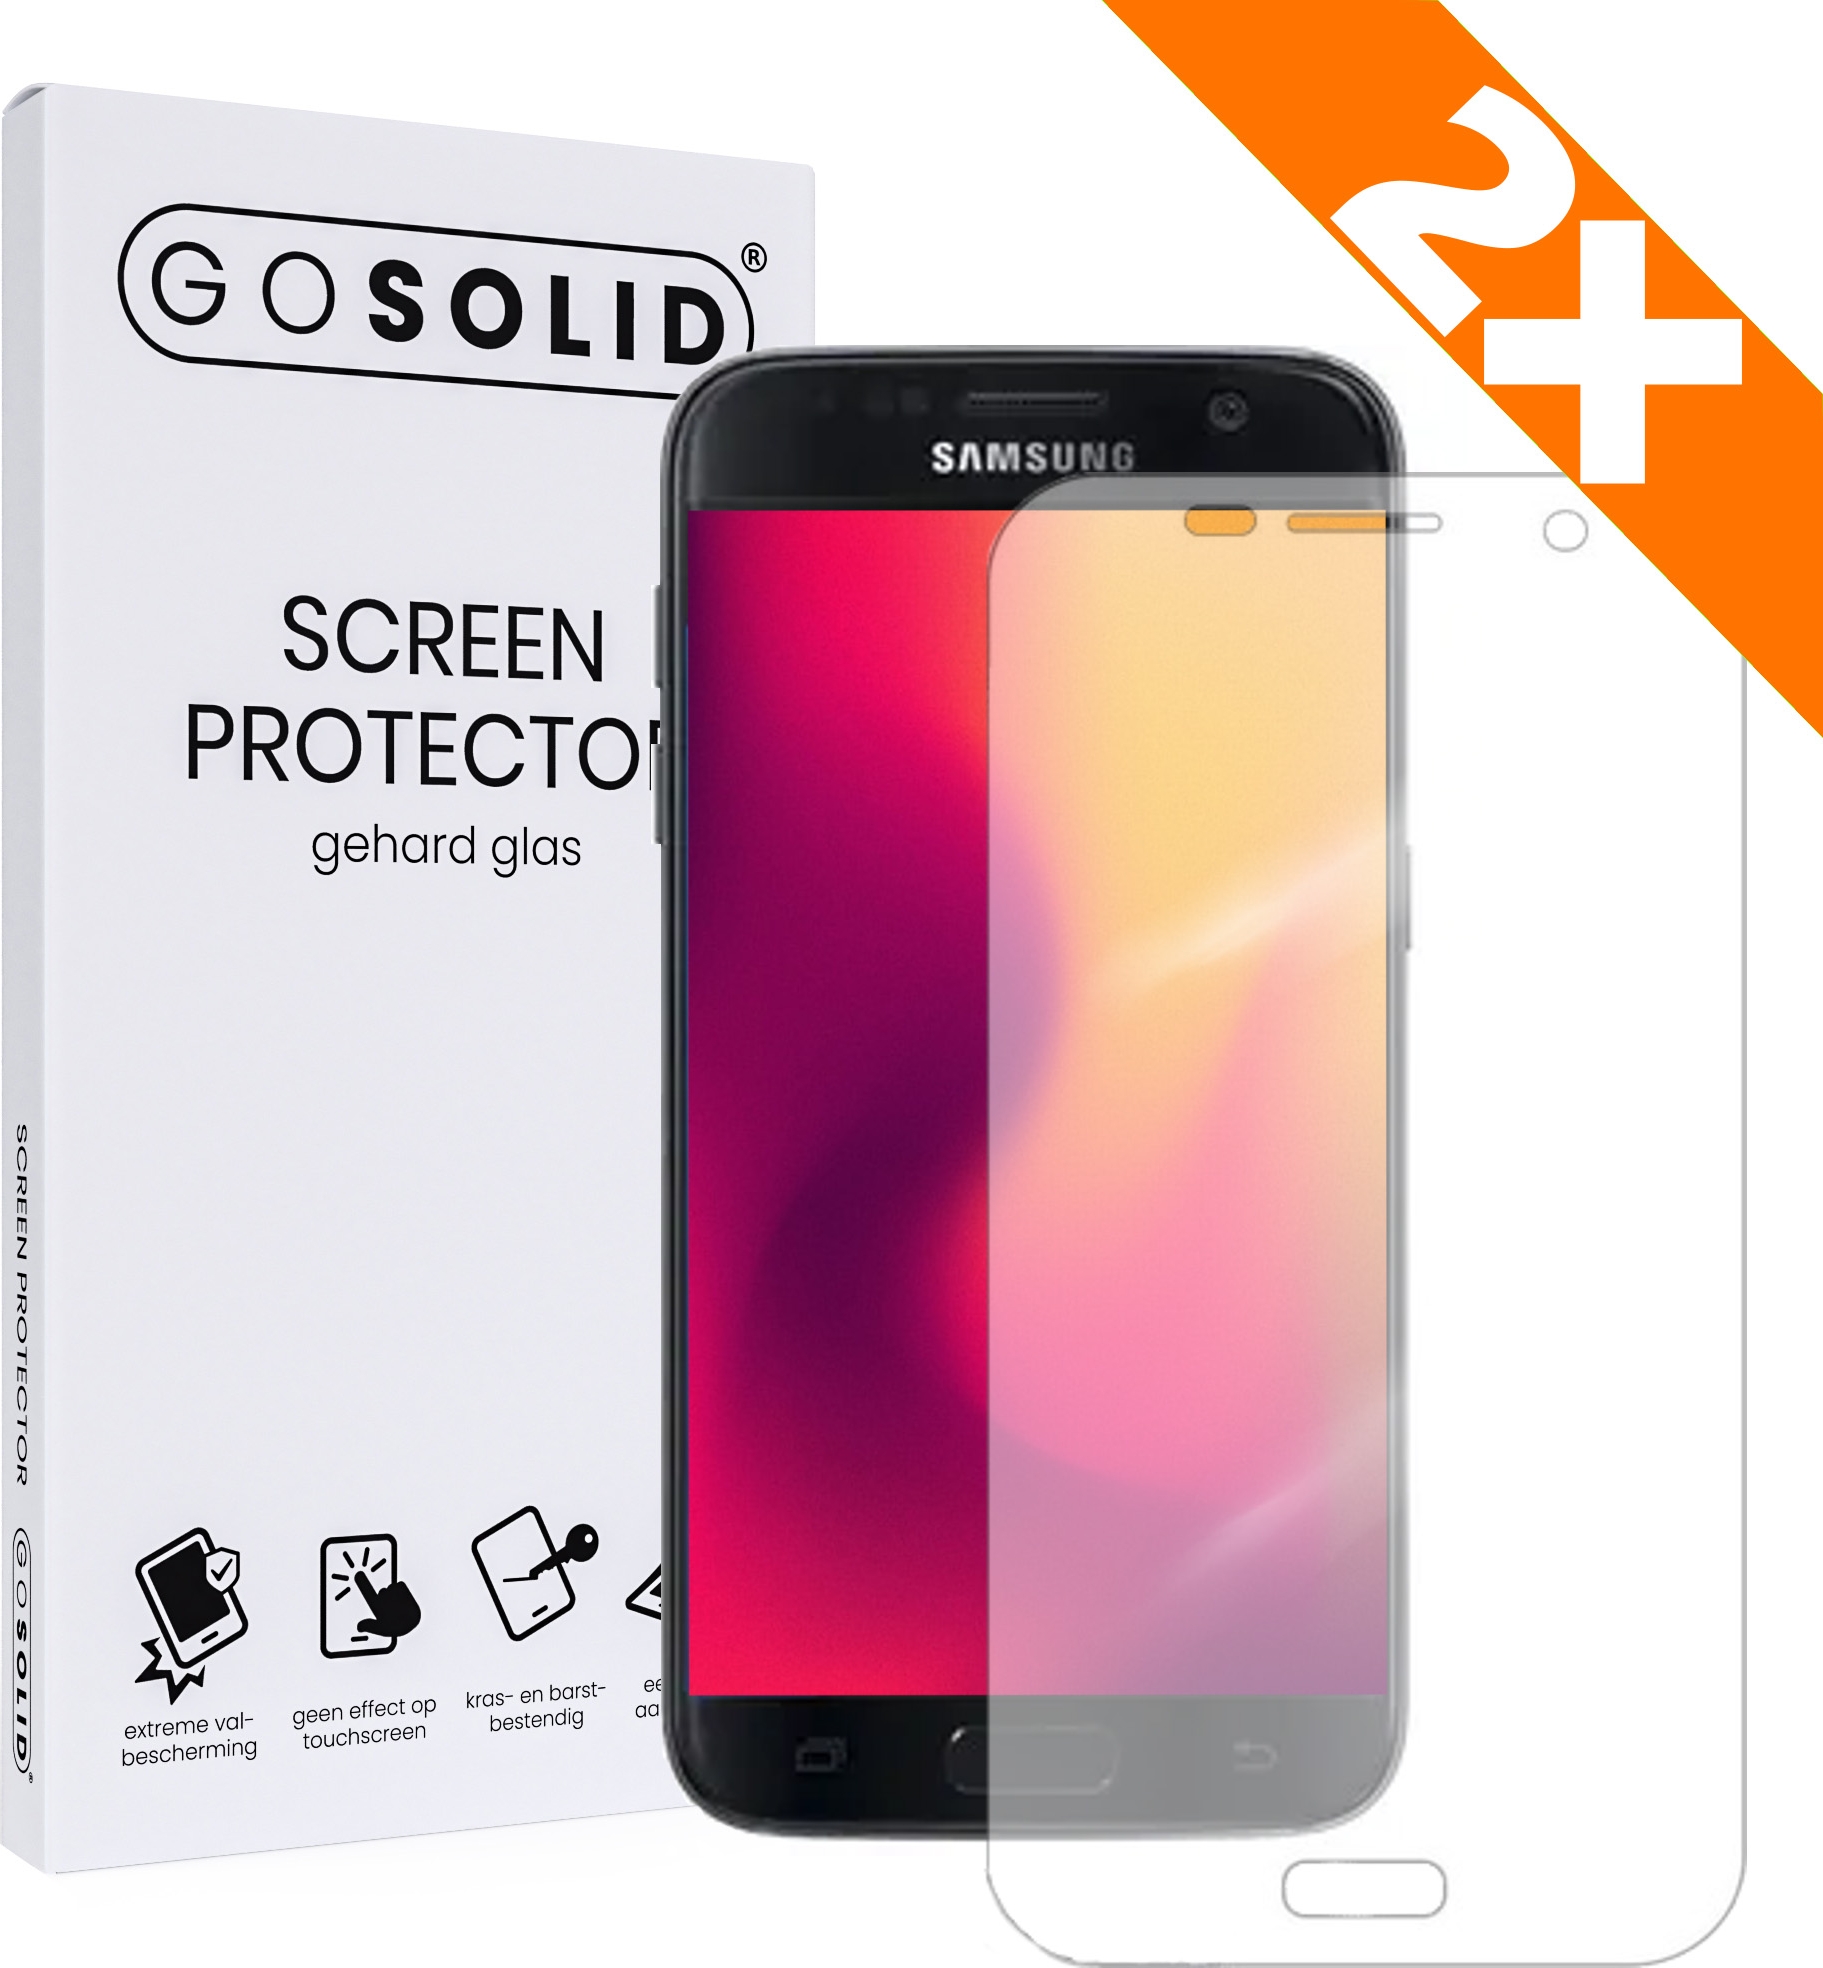 Pessimistisch ik ga akkoord met Gemoedsrust ᐅ • GO SOLID! Samsung Galaxy S7 Edge screenprotector gehard glas - Duopack  | Eenvoudig bij ScreenProtectors.nl